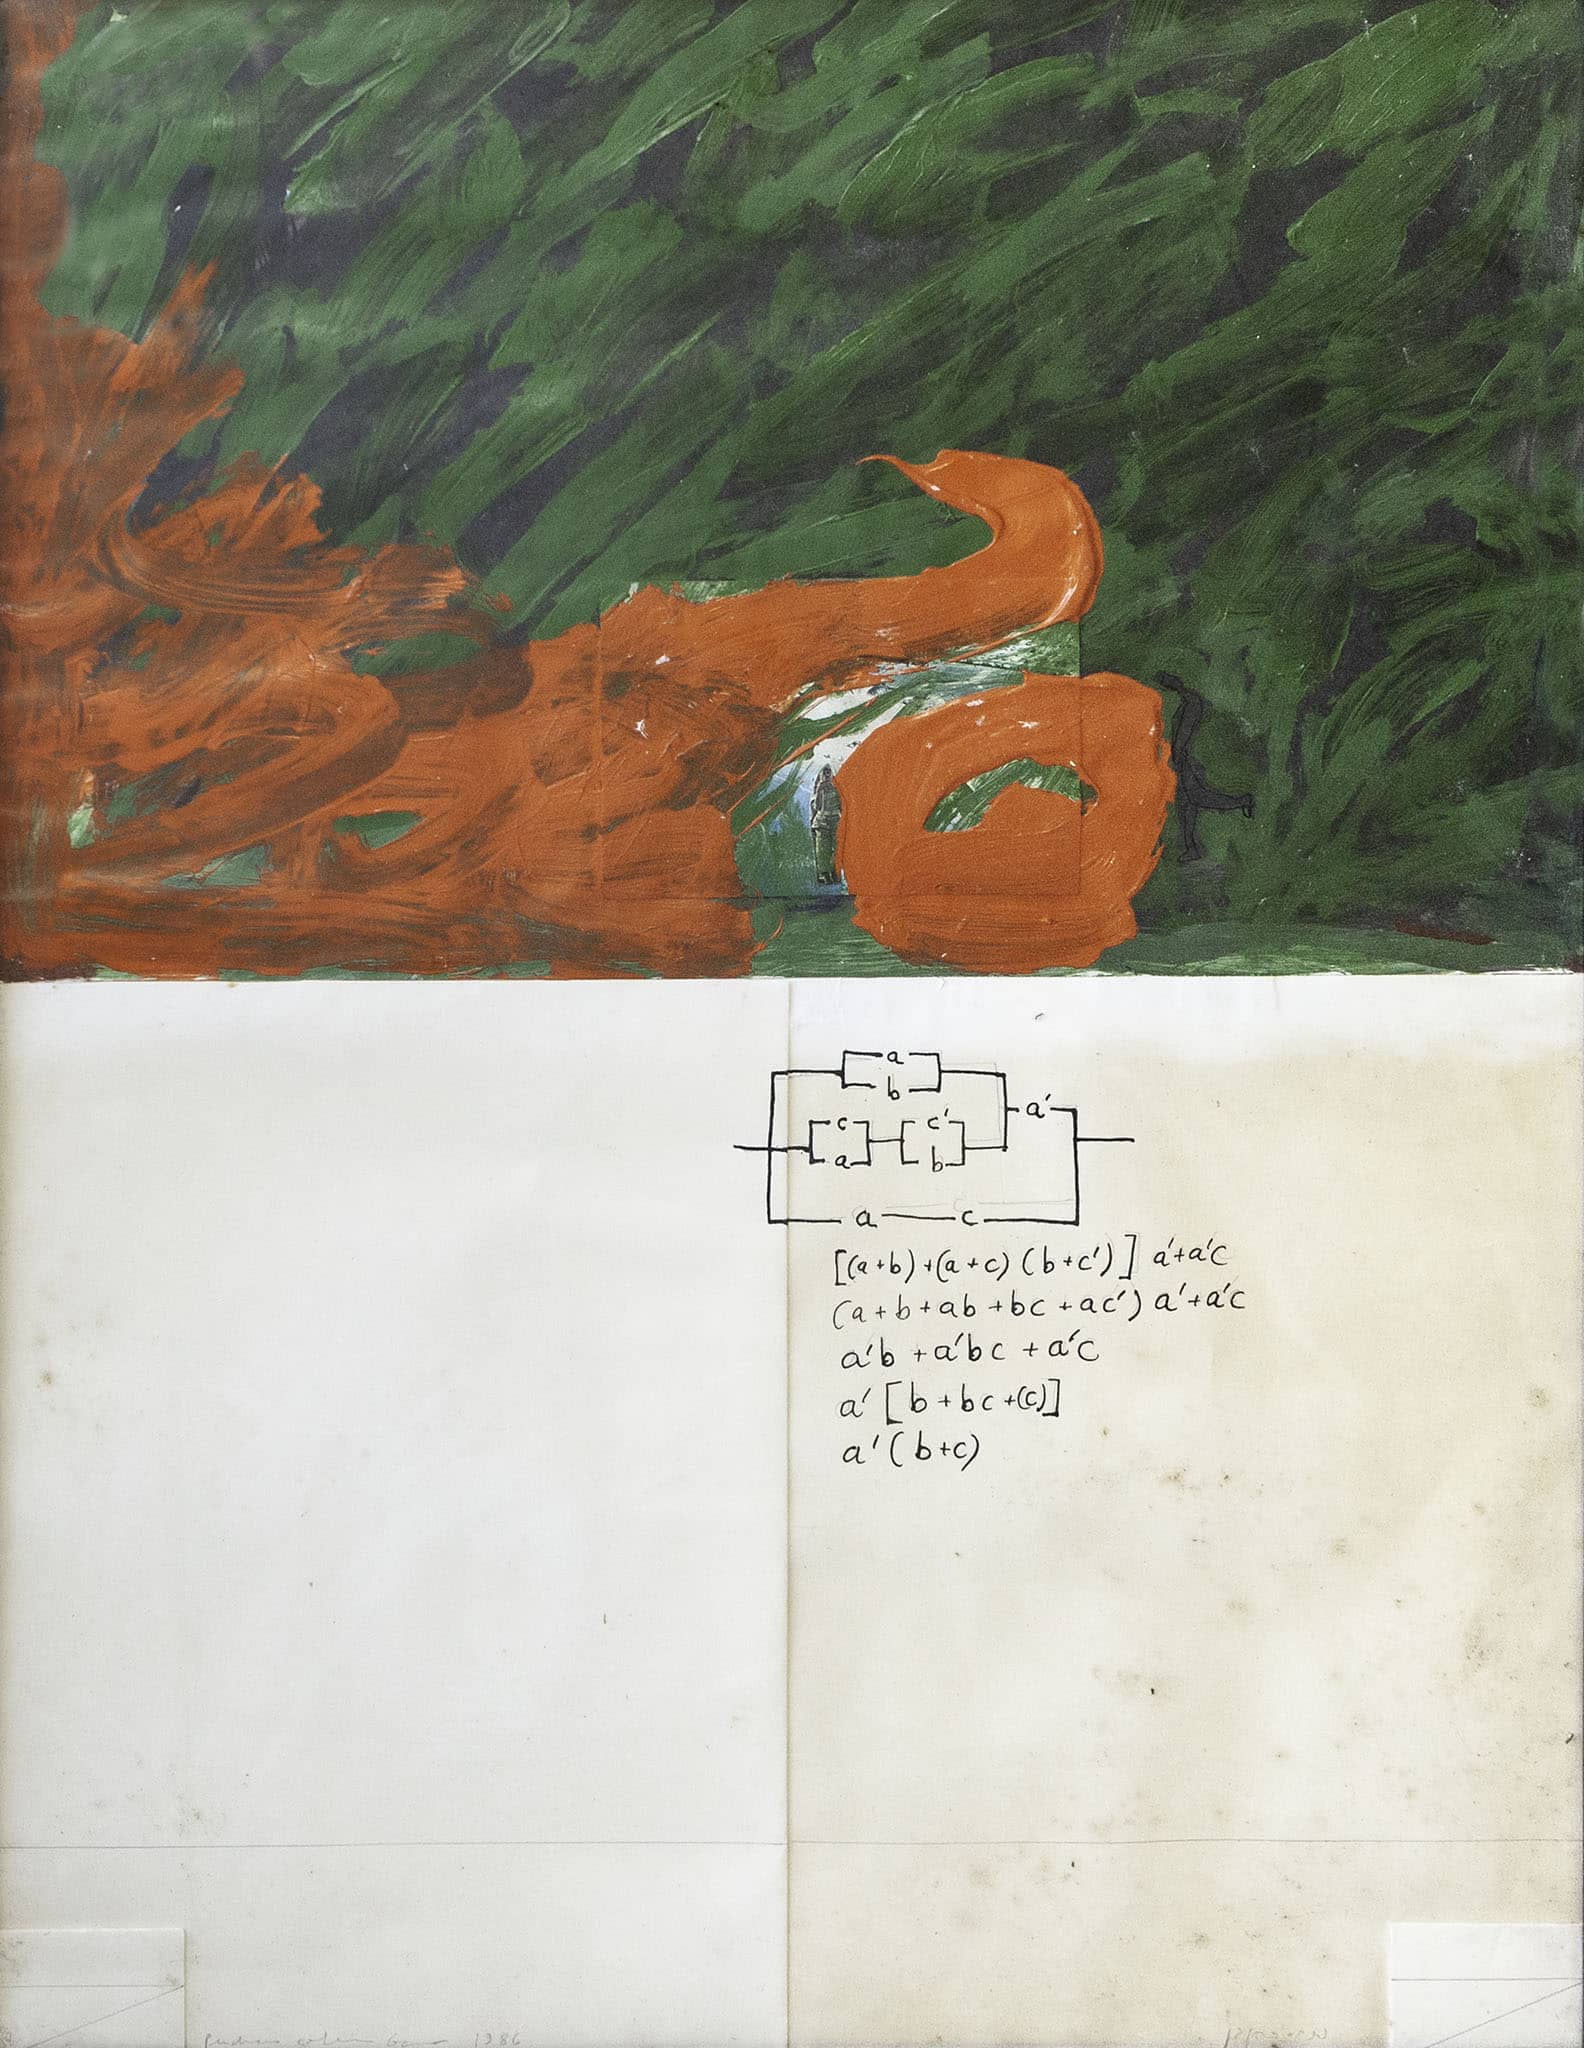 פנחס כהן גן, "ללא כותרת" 1986, טכניקה מעורבת על נייר, 70x50 ס"מ